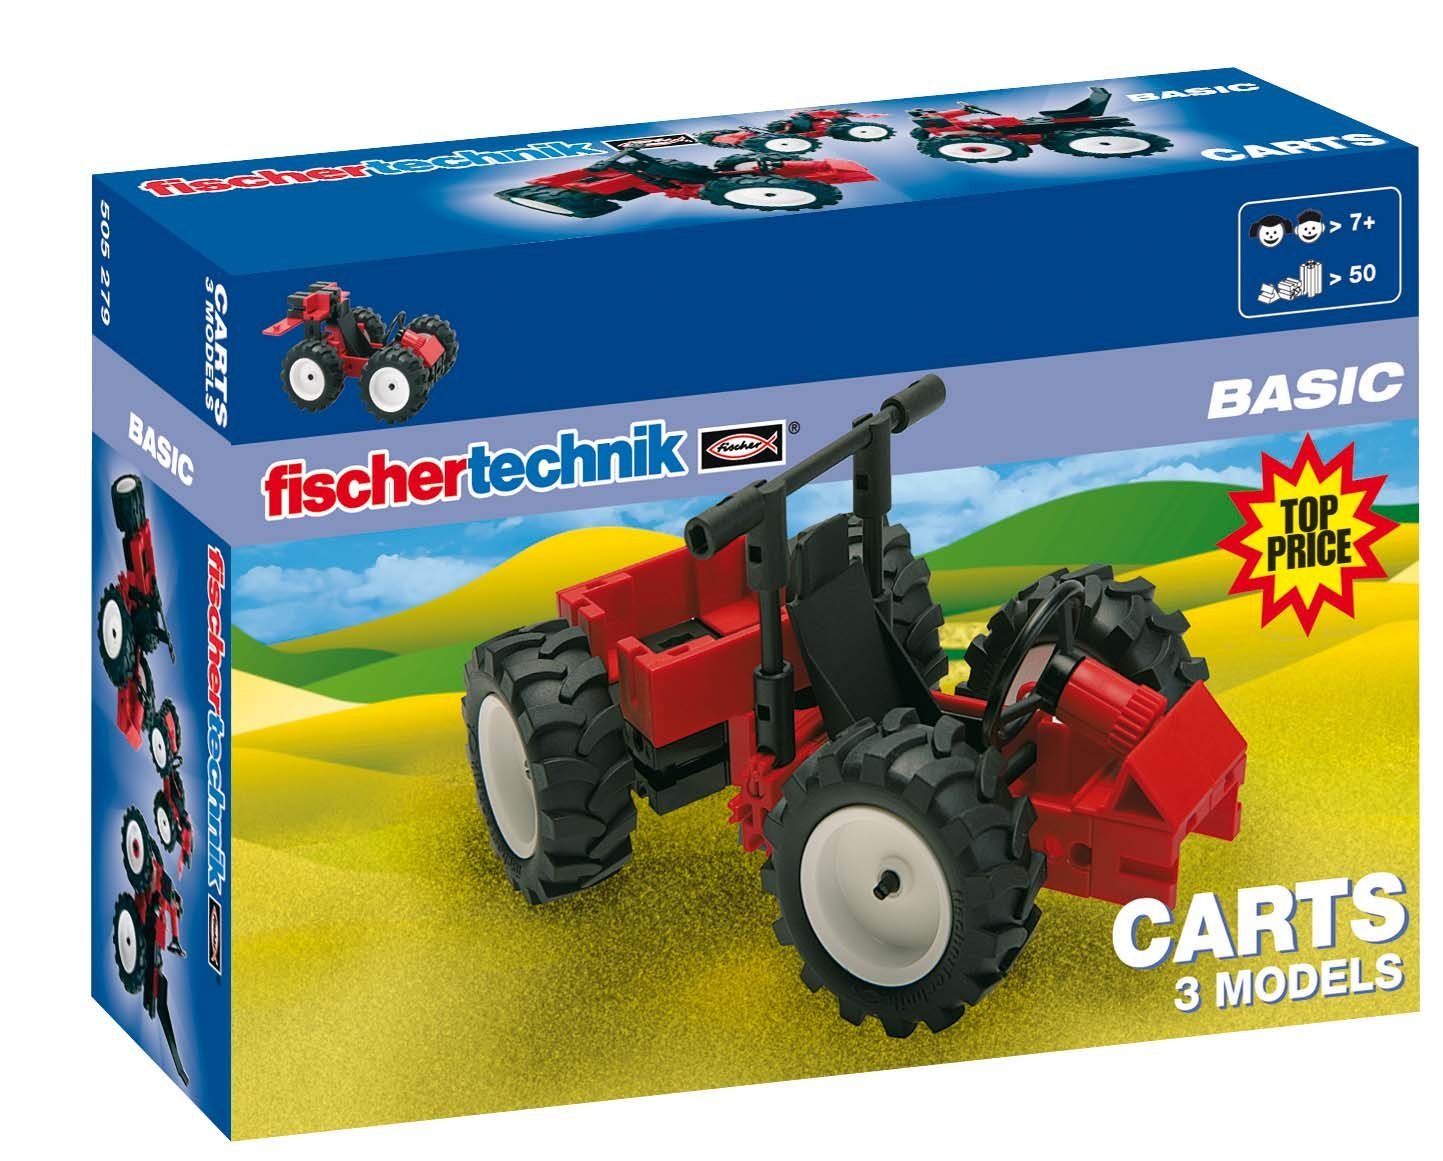 fischertechnik 505279 - Carts (Basic)